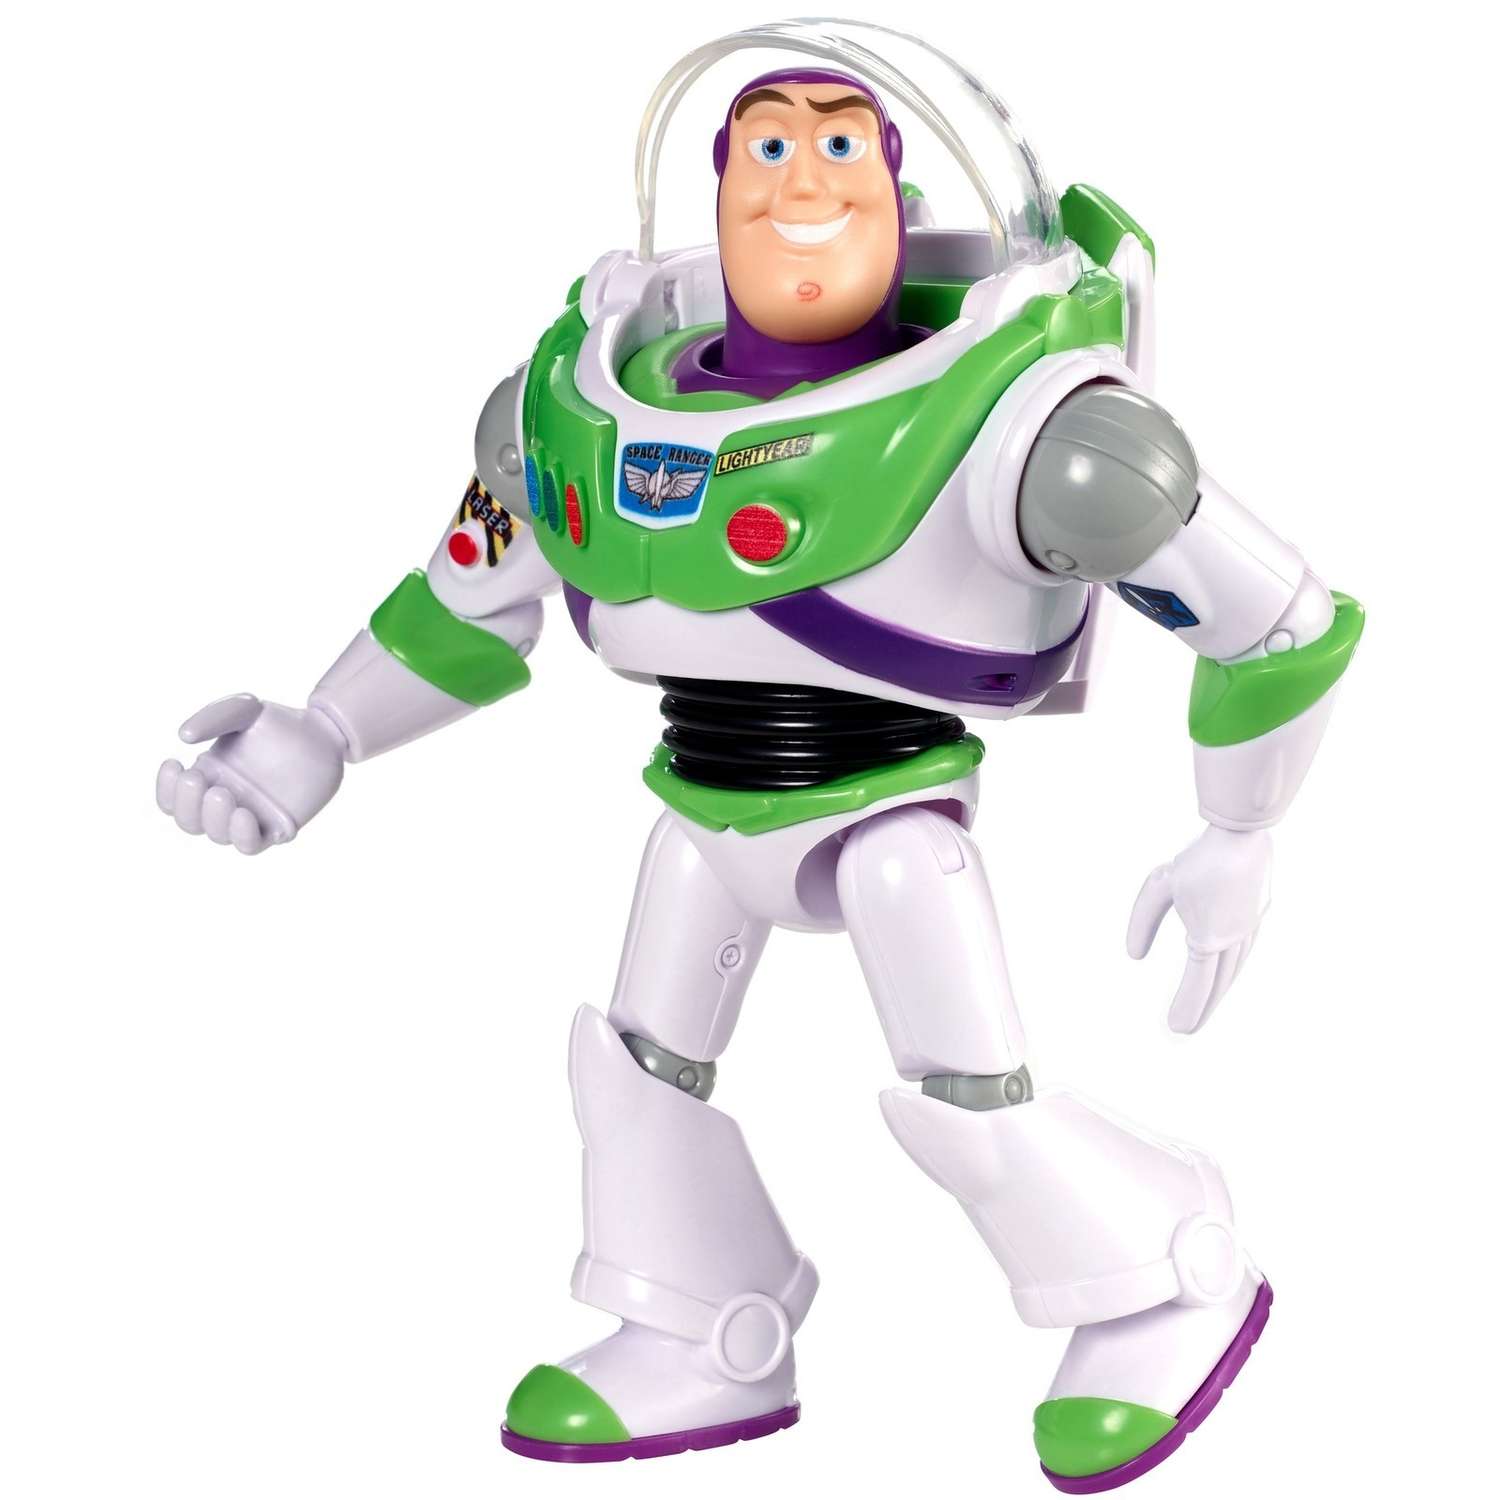 Фигурка Toy Story История игрушек 4 Базз Лайтер в шлеме GGP60 - фото 3